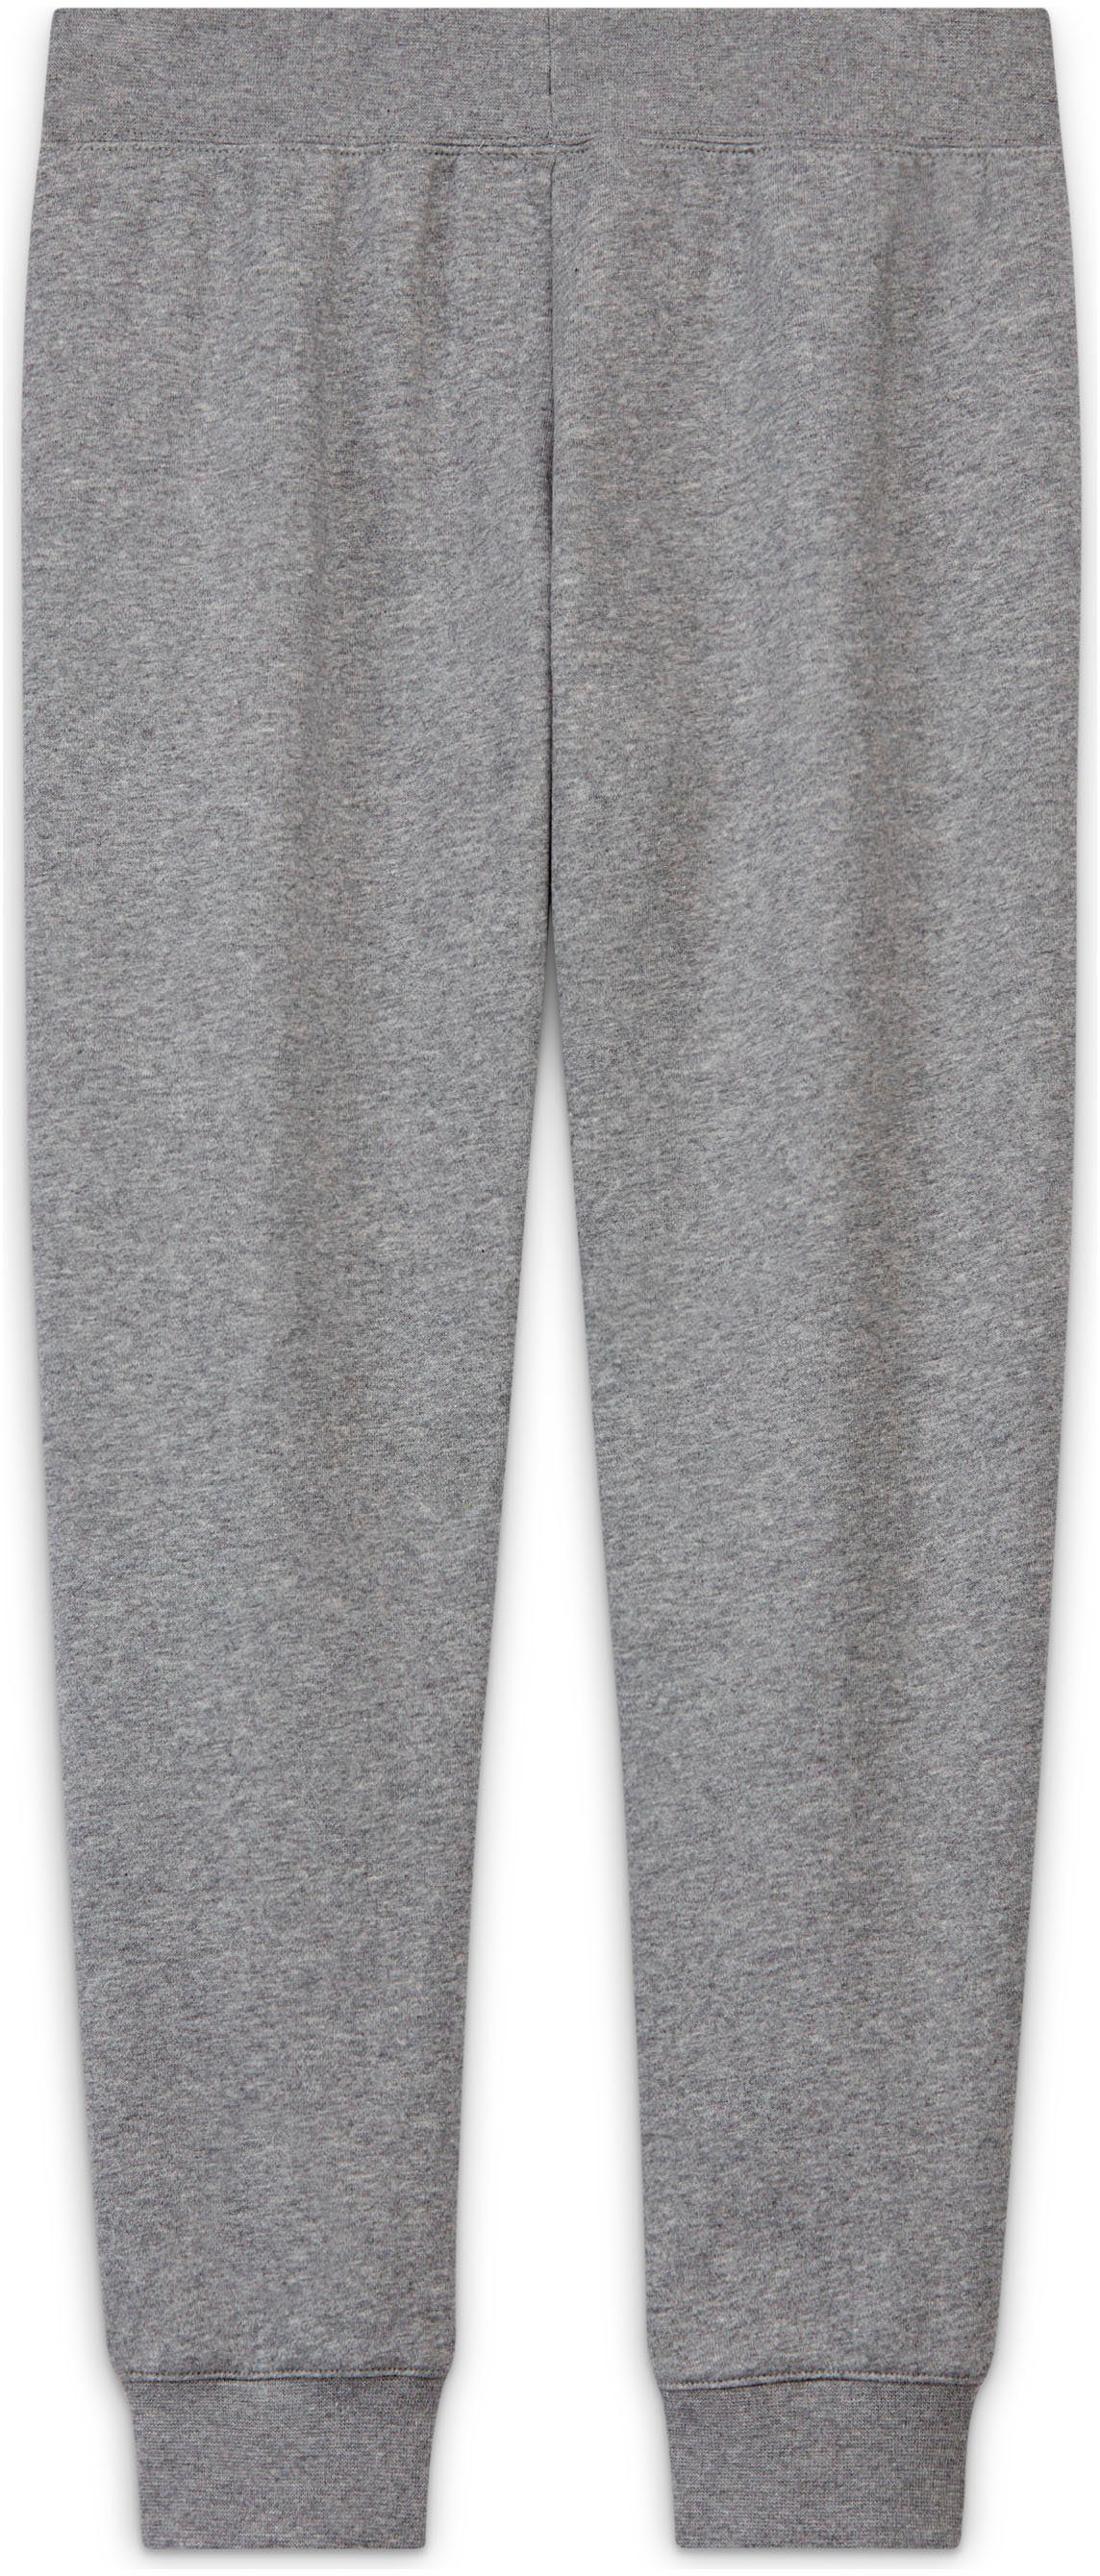 (Girls) Nike Kids' Club Jogginghose Sportswear grau-meliert Big Pants Fleece